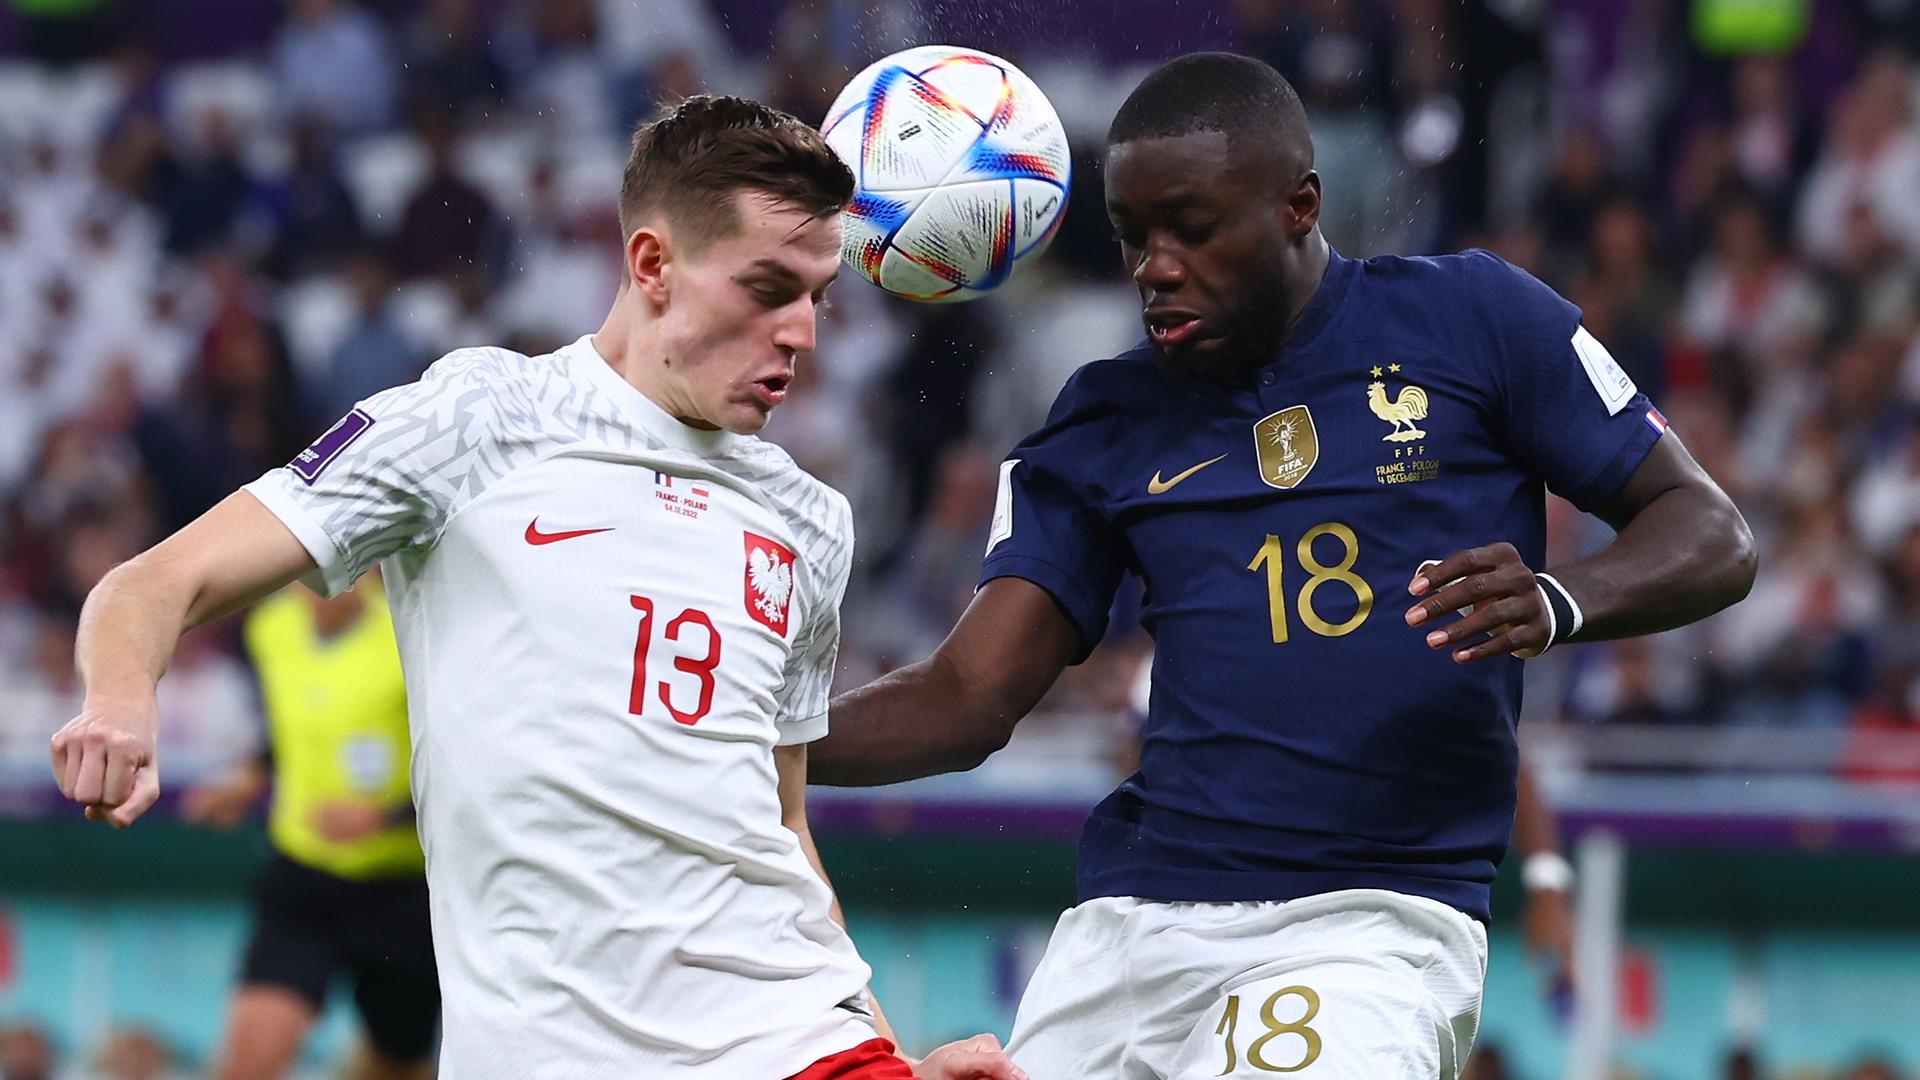 Fußball-WM 2022 in Katar, Frankreich - Polen, Achtelfinale: Dayot Upamecano (r.) im Zweikampf gegen Polens Jakub Kaminski